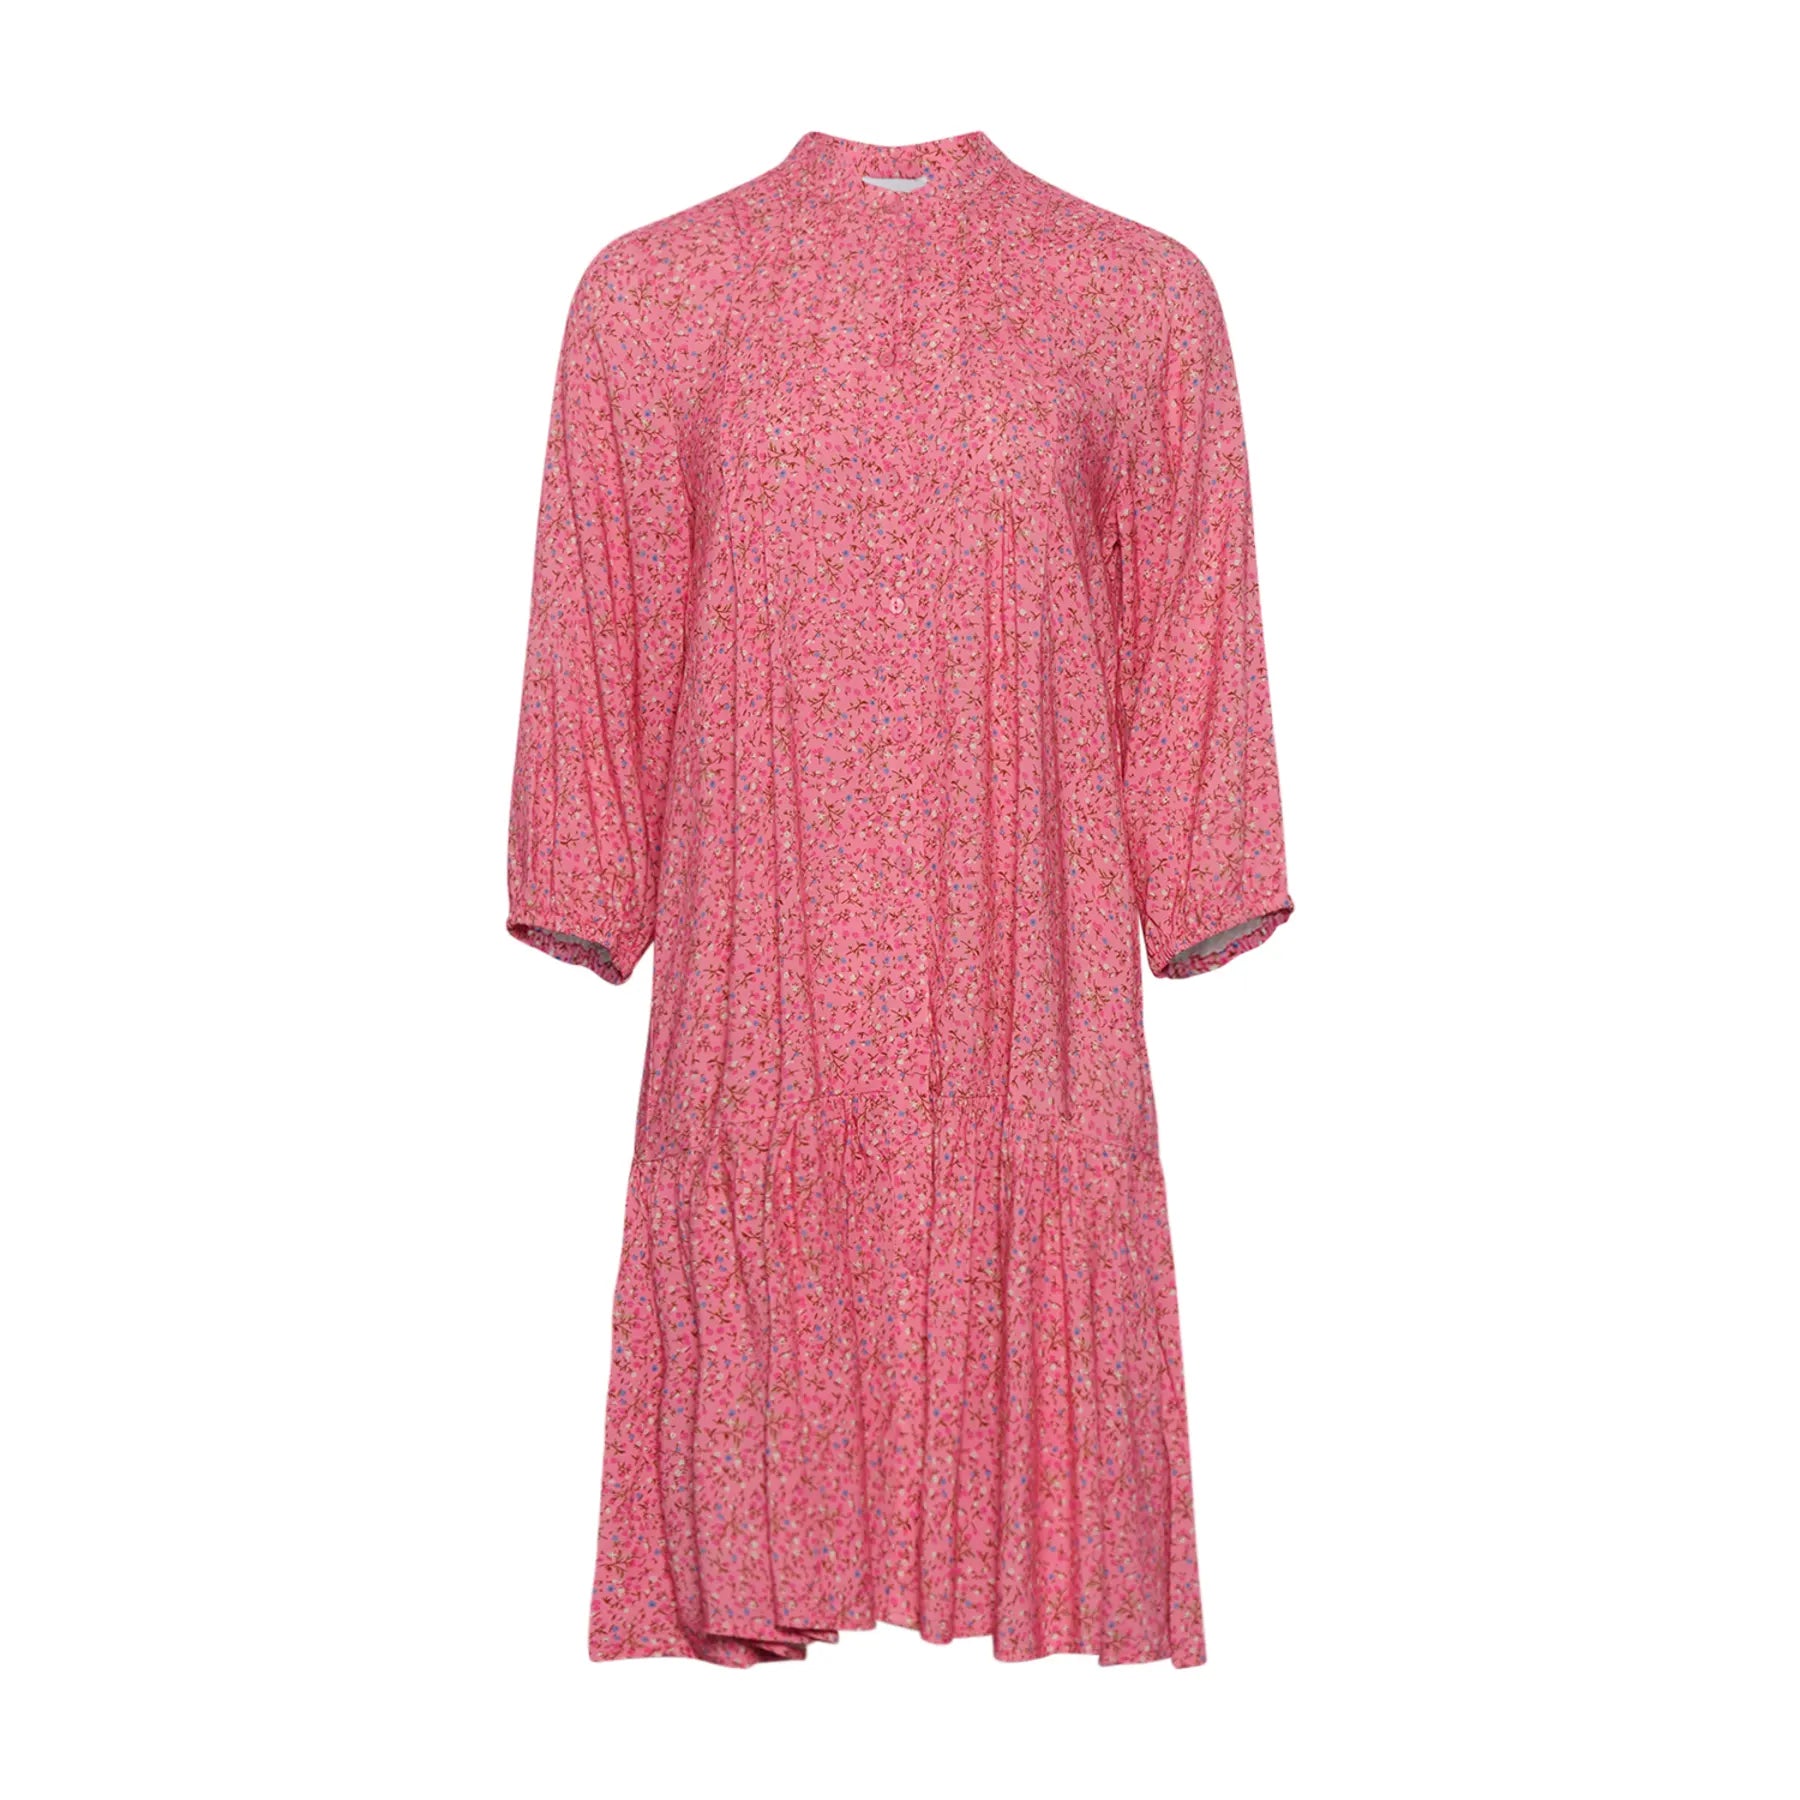 Imogene Dress - Pink Flower